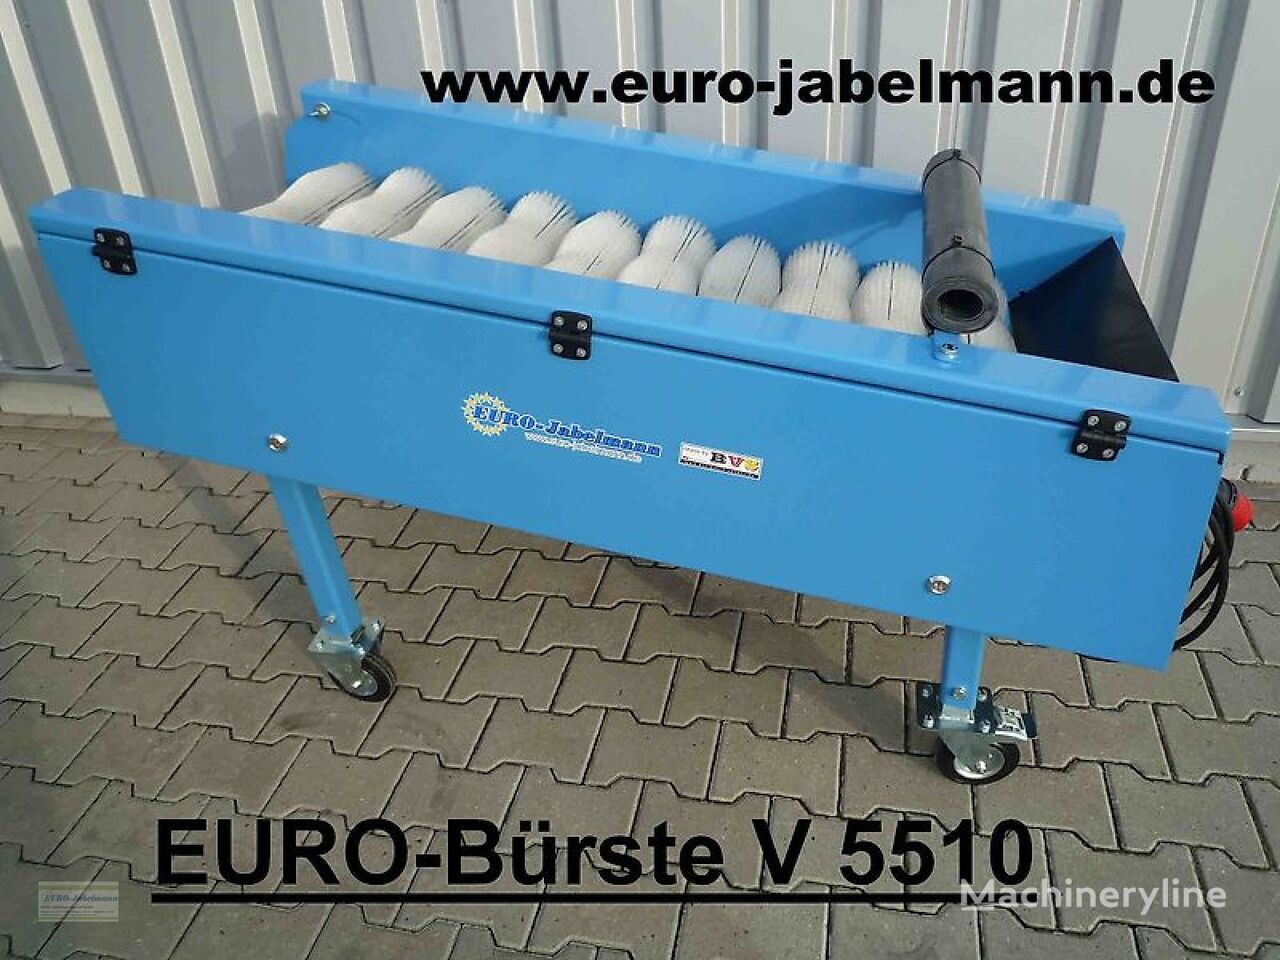 nieuw EURO-Jabelmann 550 - 2200 mm breit, eigene Herstellung (Made in Germany) groentewasmachine